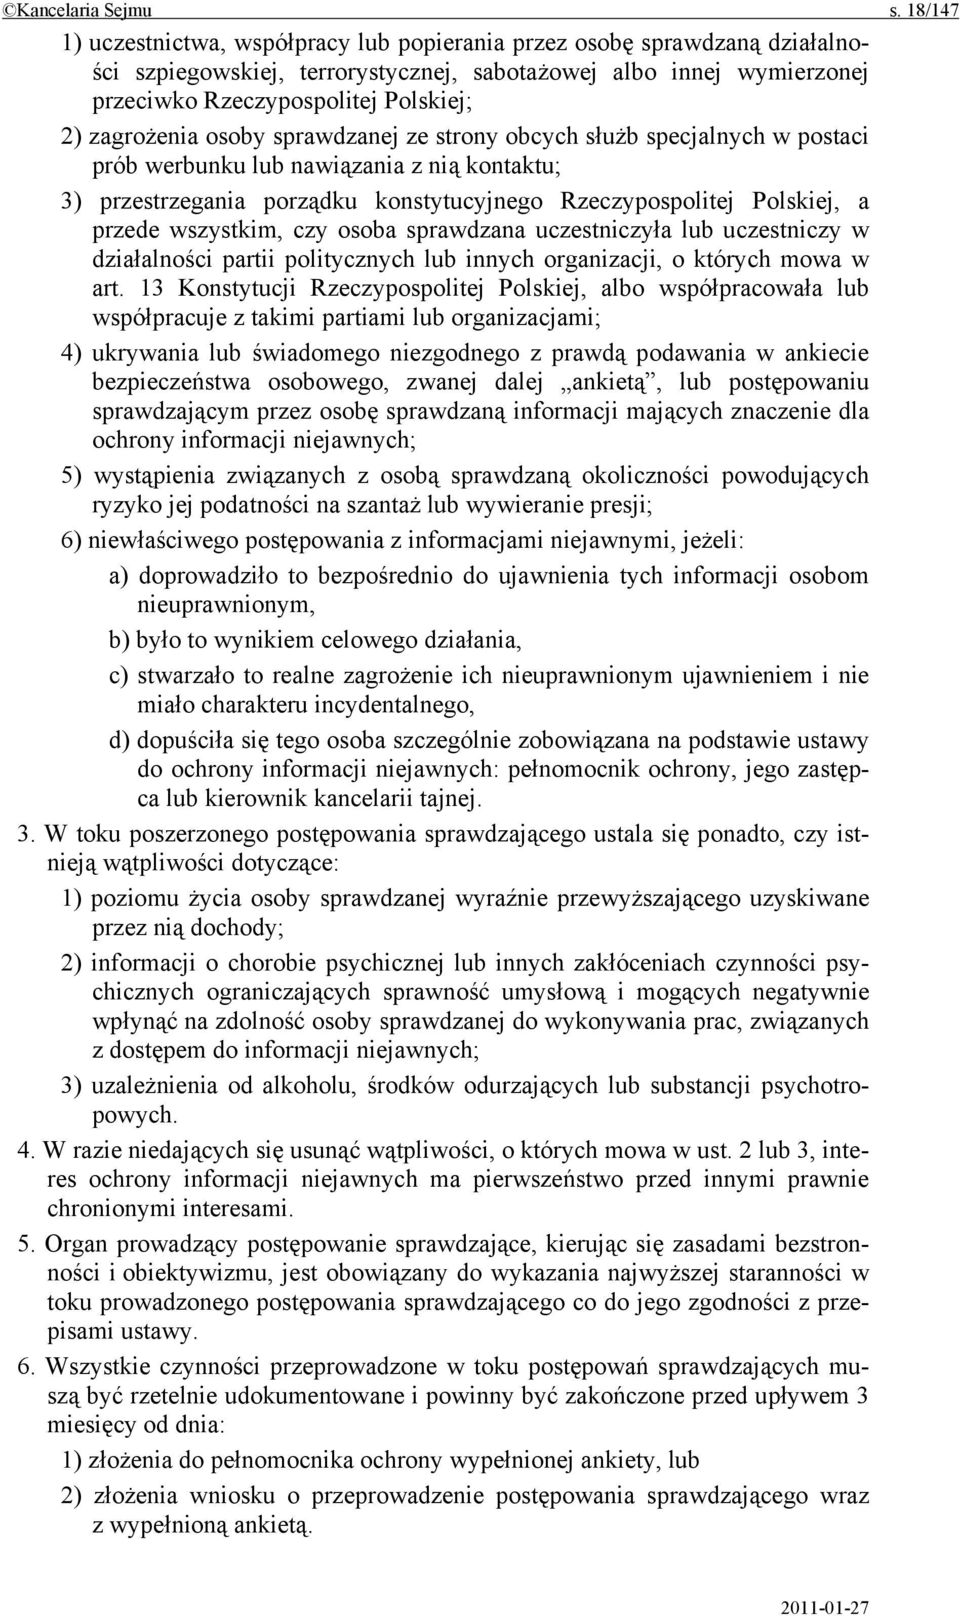 zagrożenia osoby sprawdzanej ze strony obcych służb specjalnych w postaci prób werbunku lub nawiązania z nią kontaktu; 3) przestrzegania porządku konstytucyjnego Rzeczypospolitej Polskiej, a przede